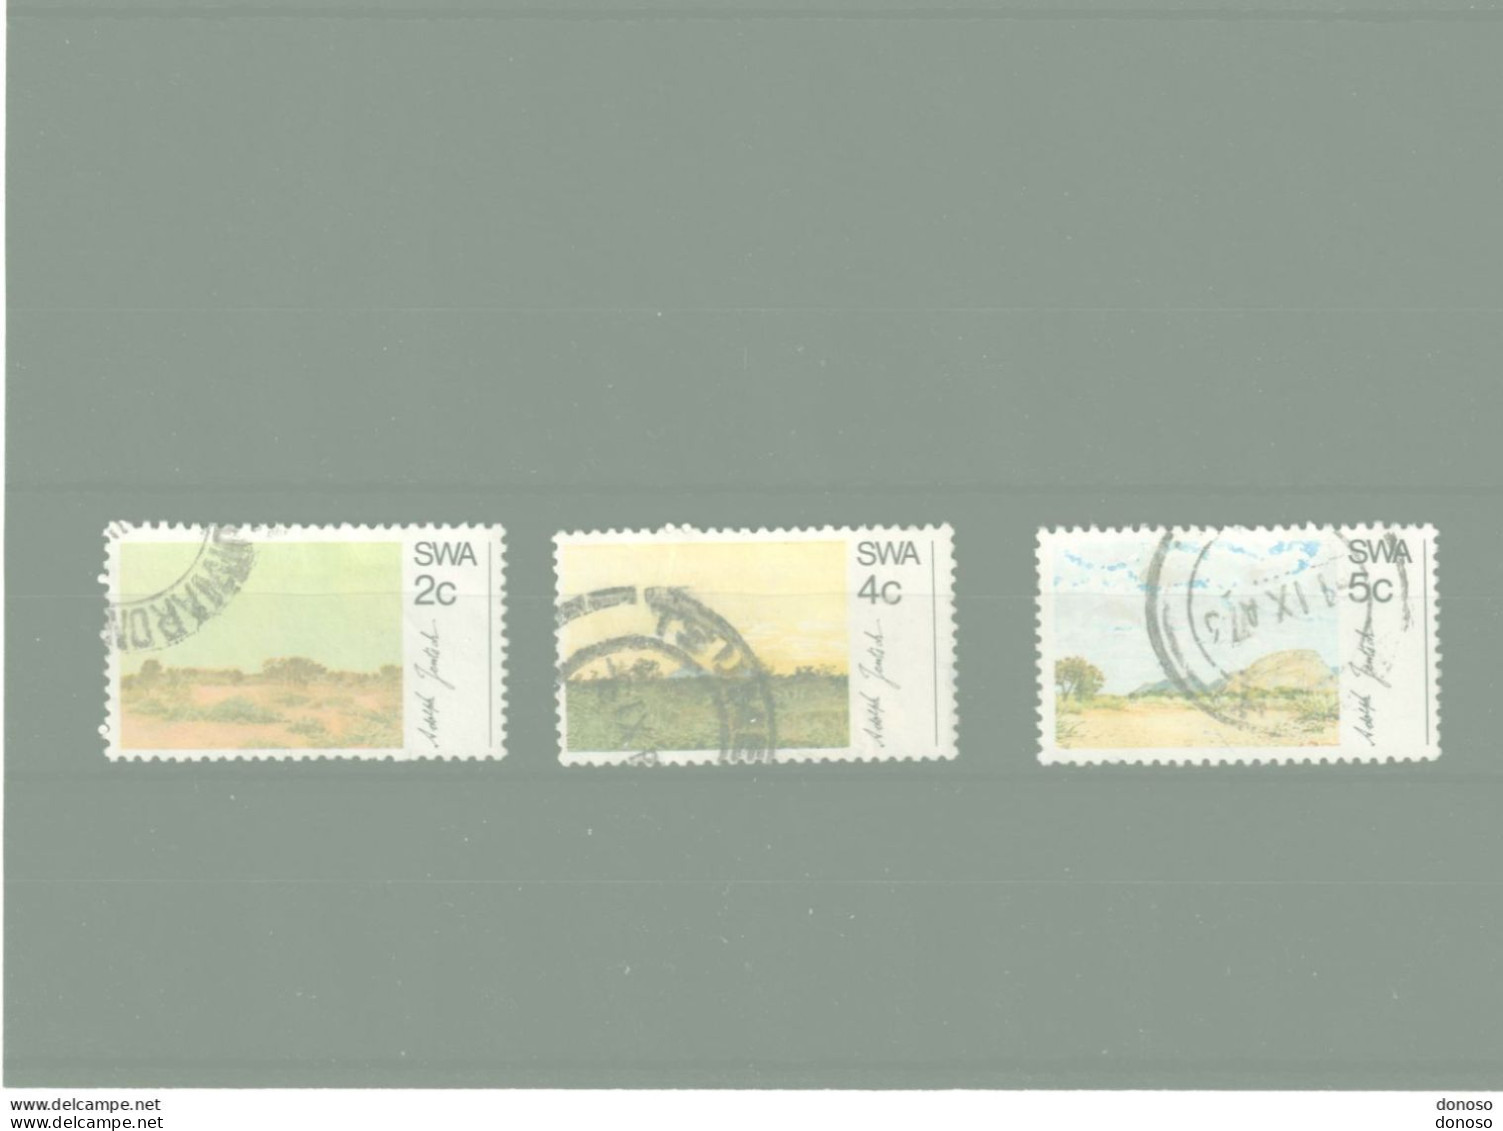 SWA SUD OUEST AFRICAIN 1973 Tableaux De Jentsch Yvert 313-315 Oblitéré Cote Yv 5 Euros - África Del Sudoeste (1923-1990)